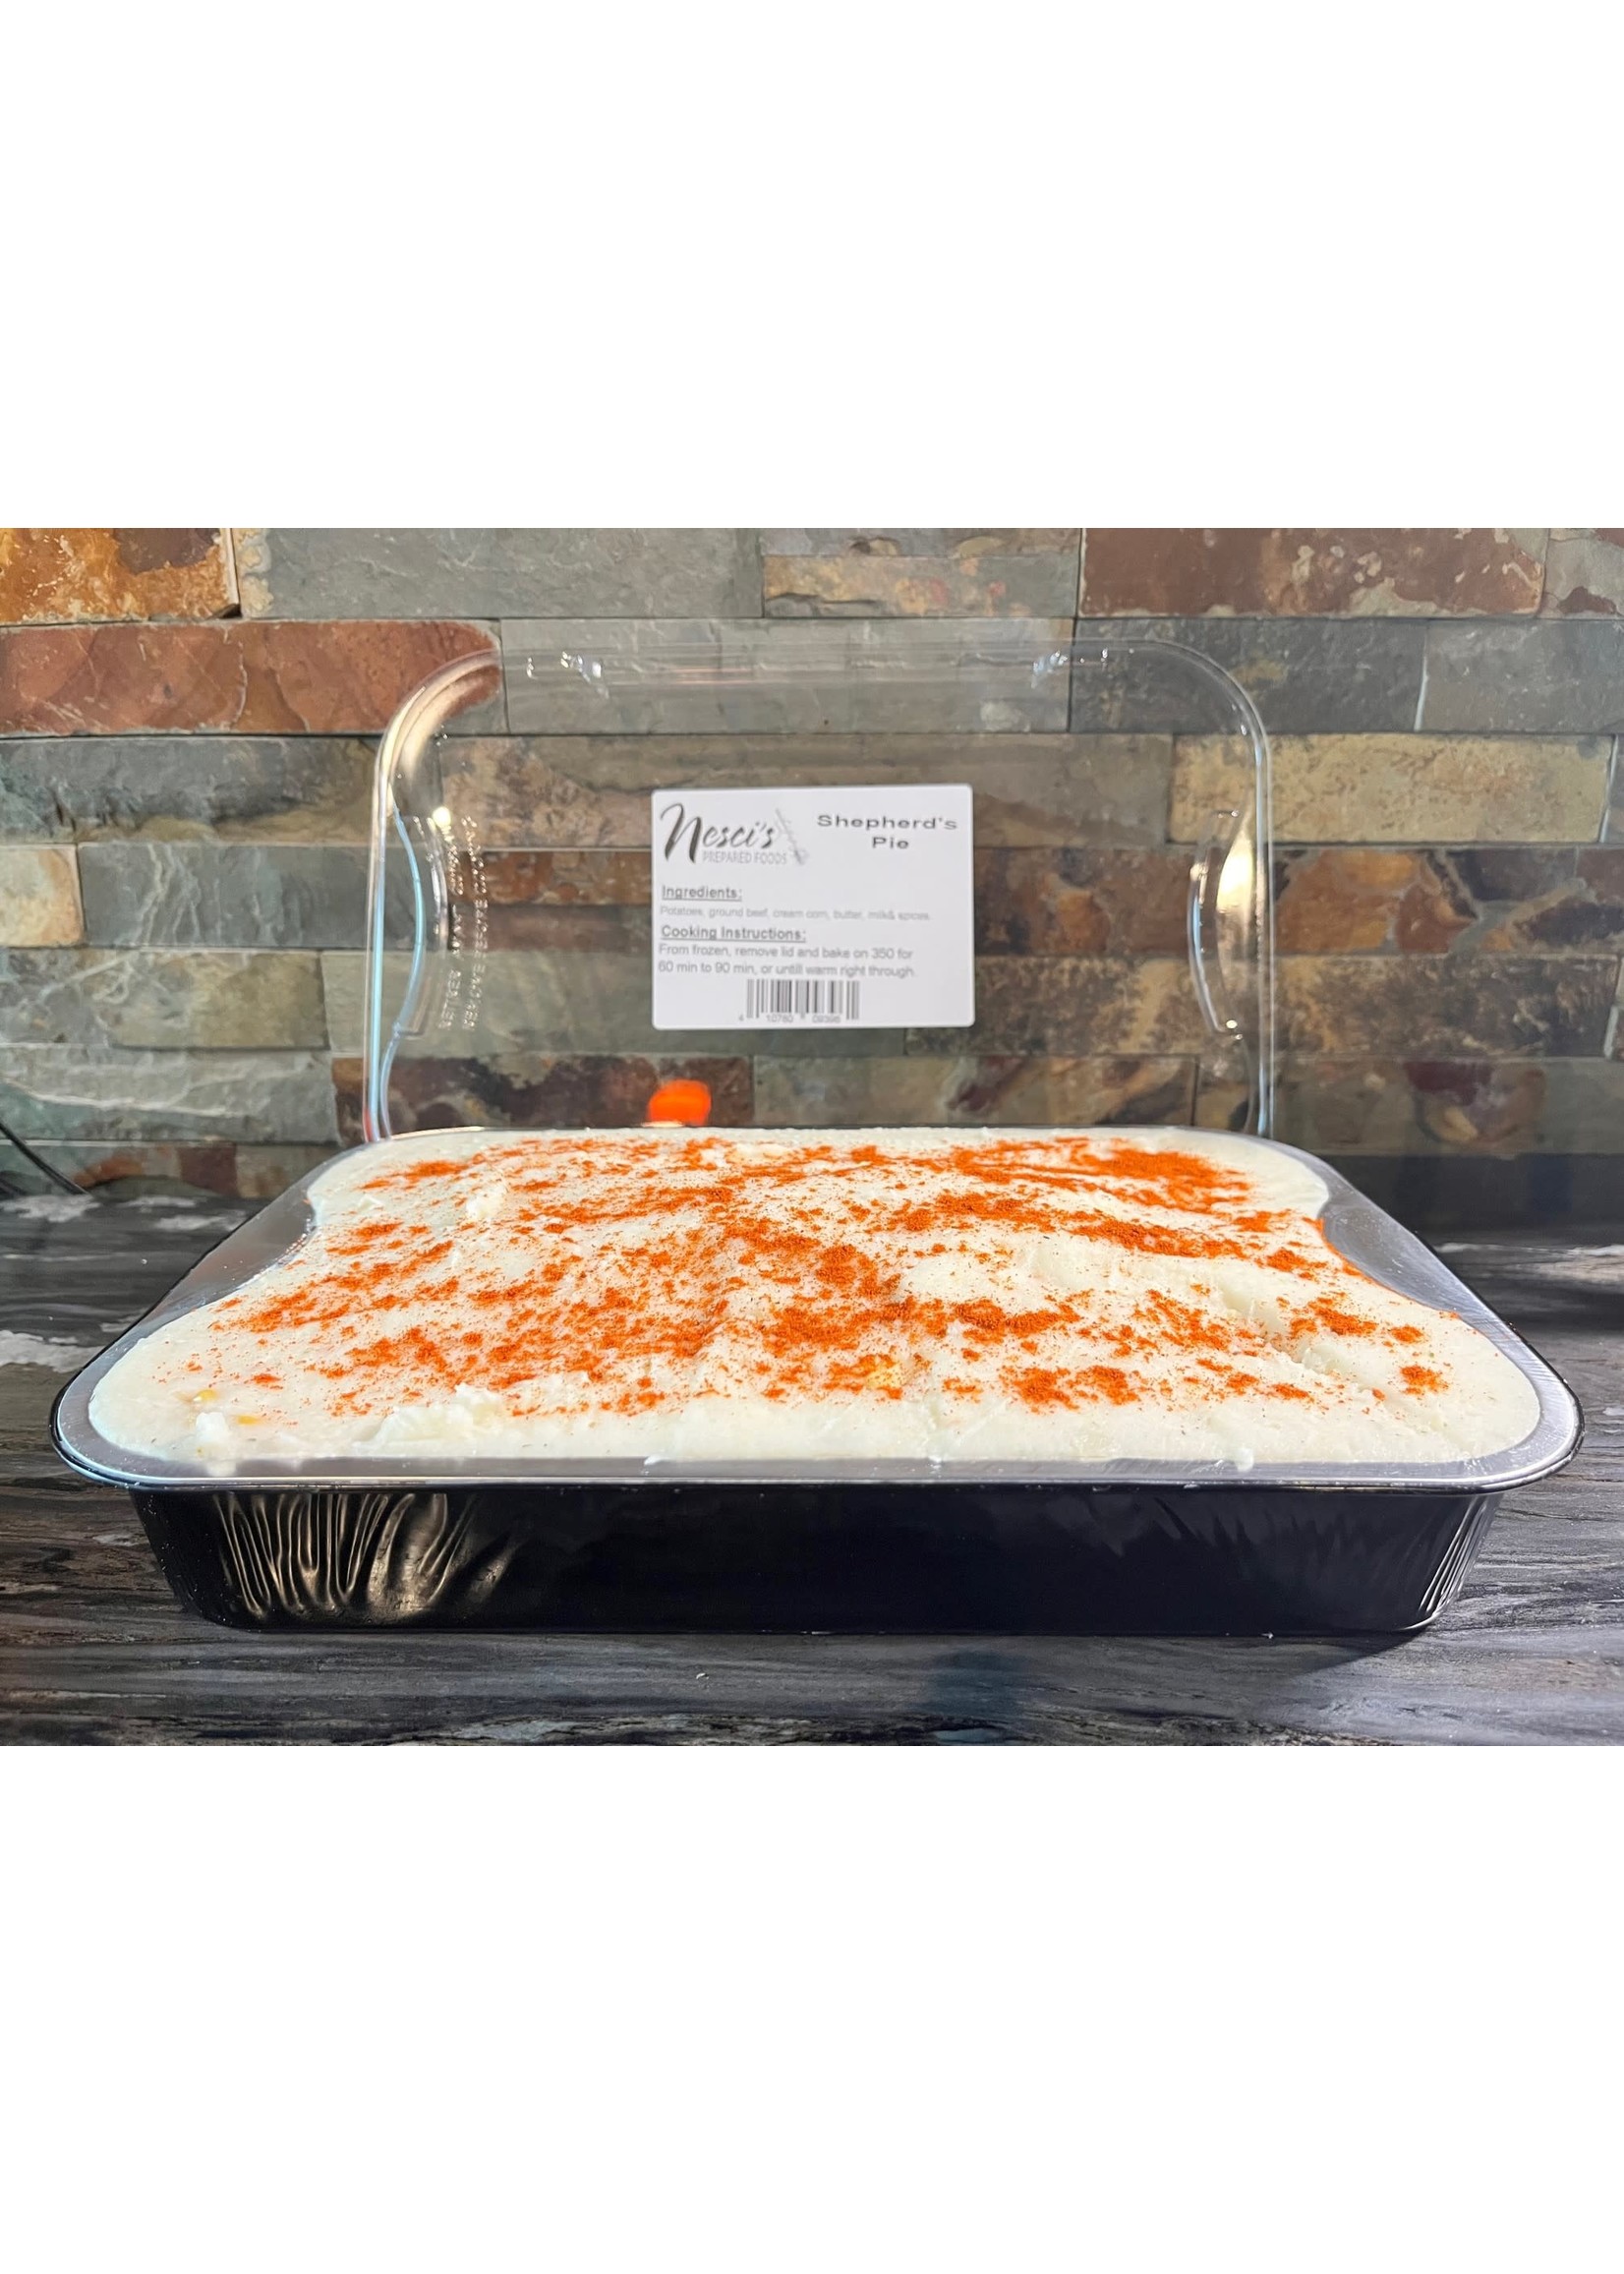 Nesci's Prepared Meals Shepherd's Pie - Large